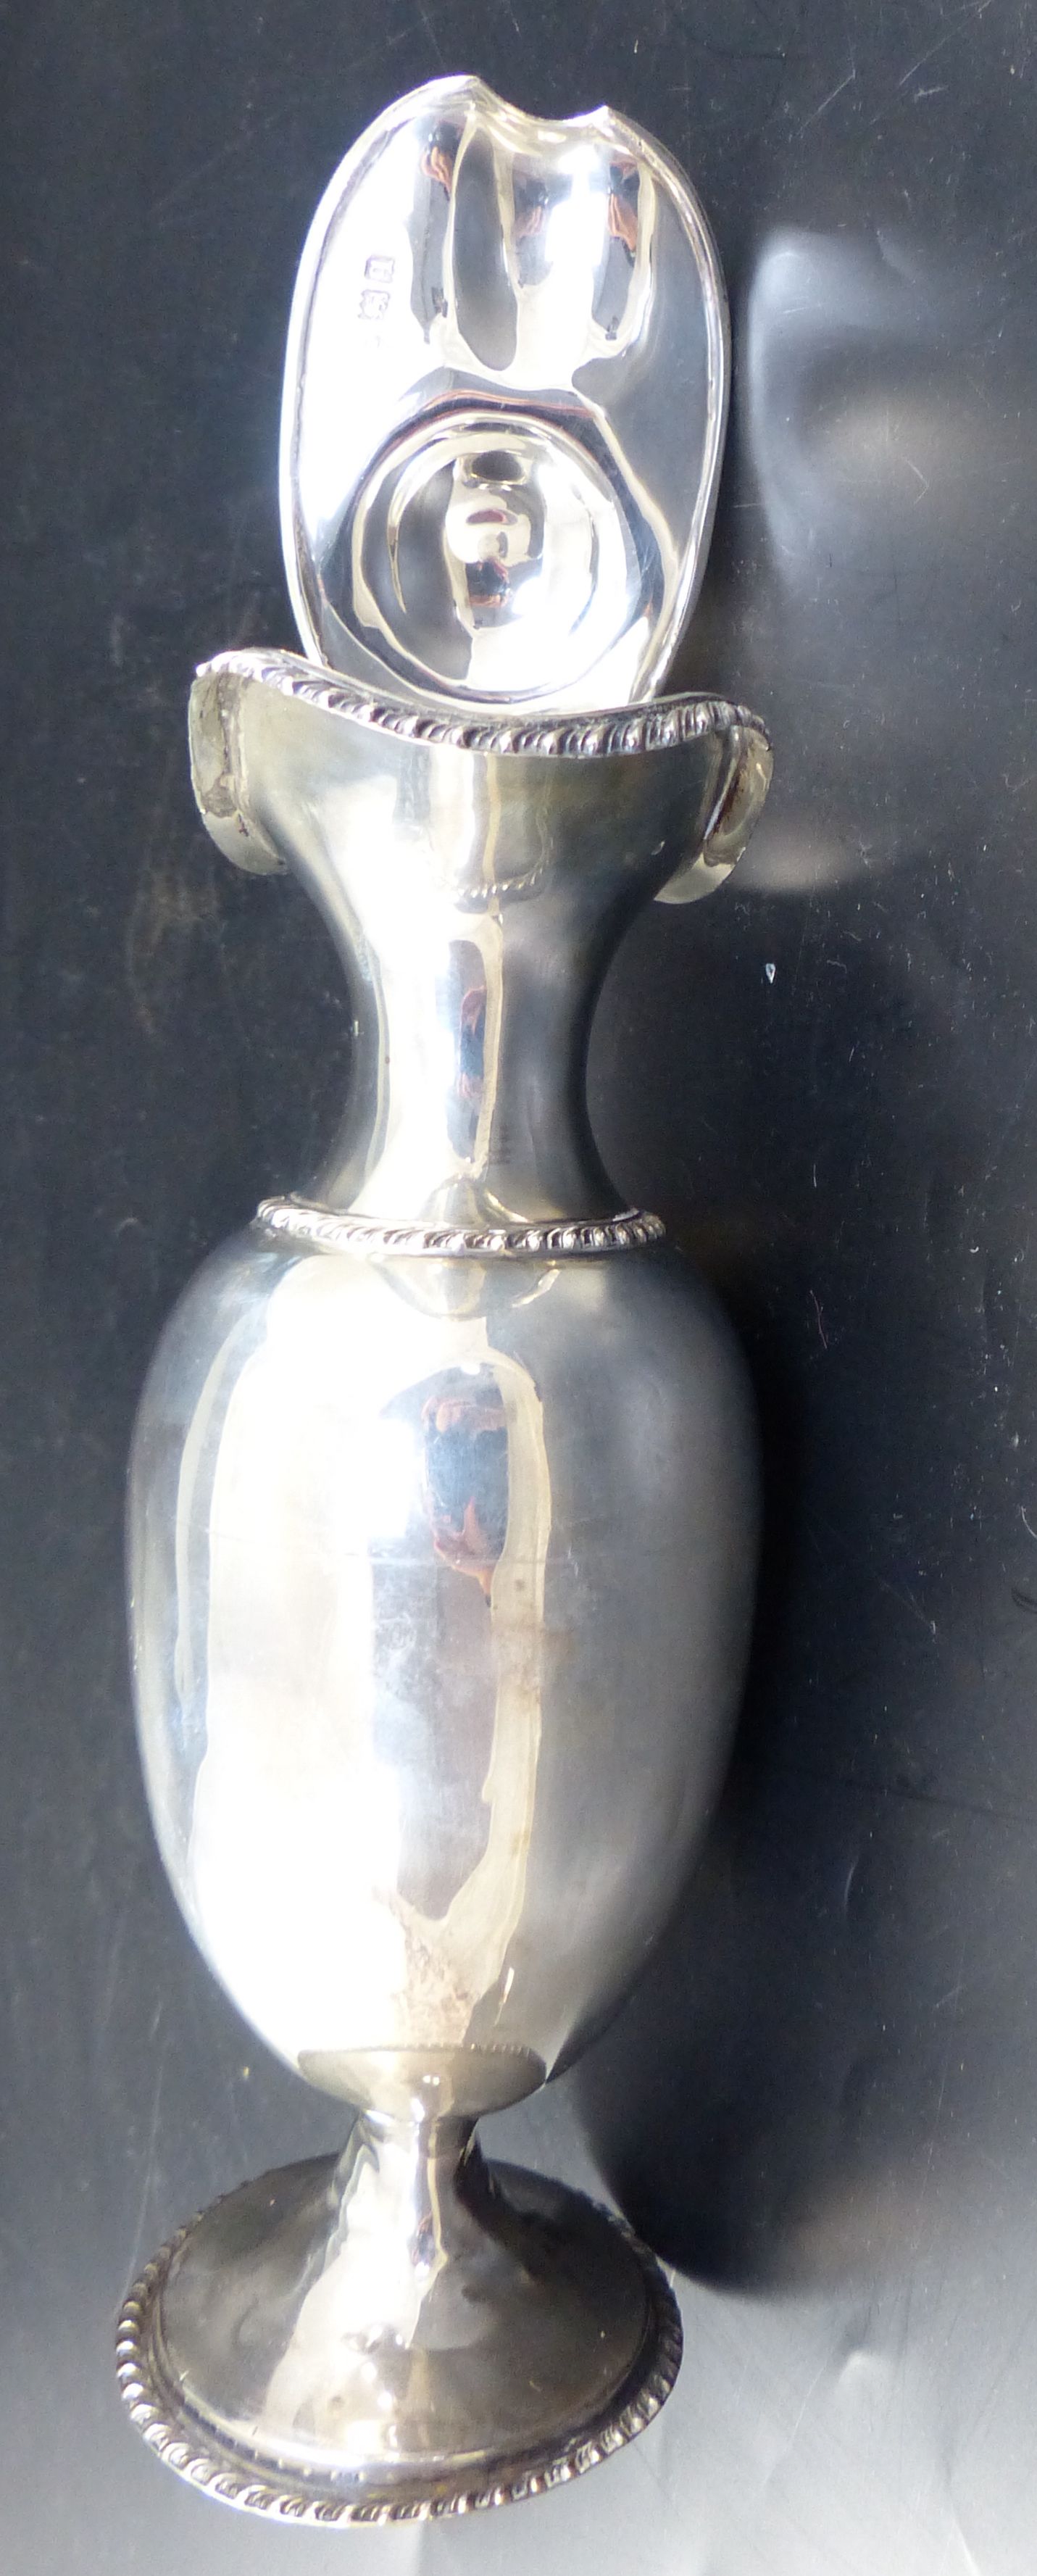 A George V silver pedestal ewer, 21.6cm, 9oz (a.f.)